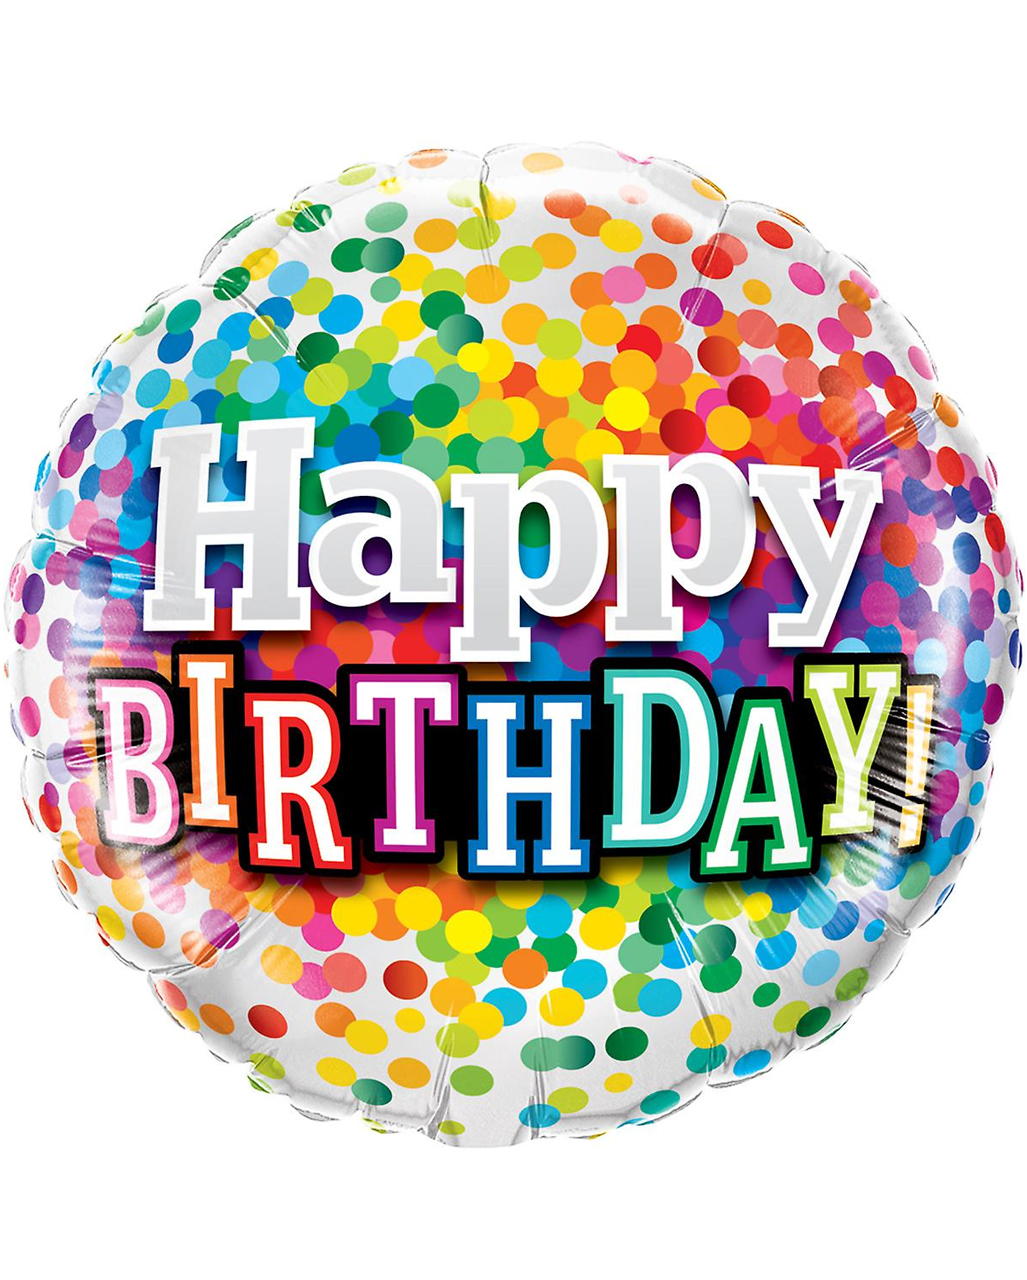 folienballon-konfetti-happy-birthday-heliumballon-geburtstagsgeschenk-geschenkidee-geburtstag-ballon-36526.jpg